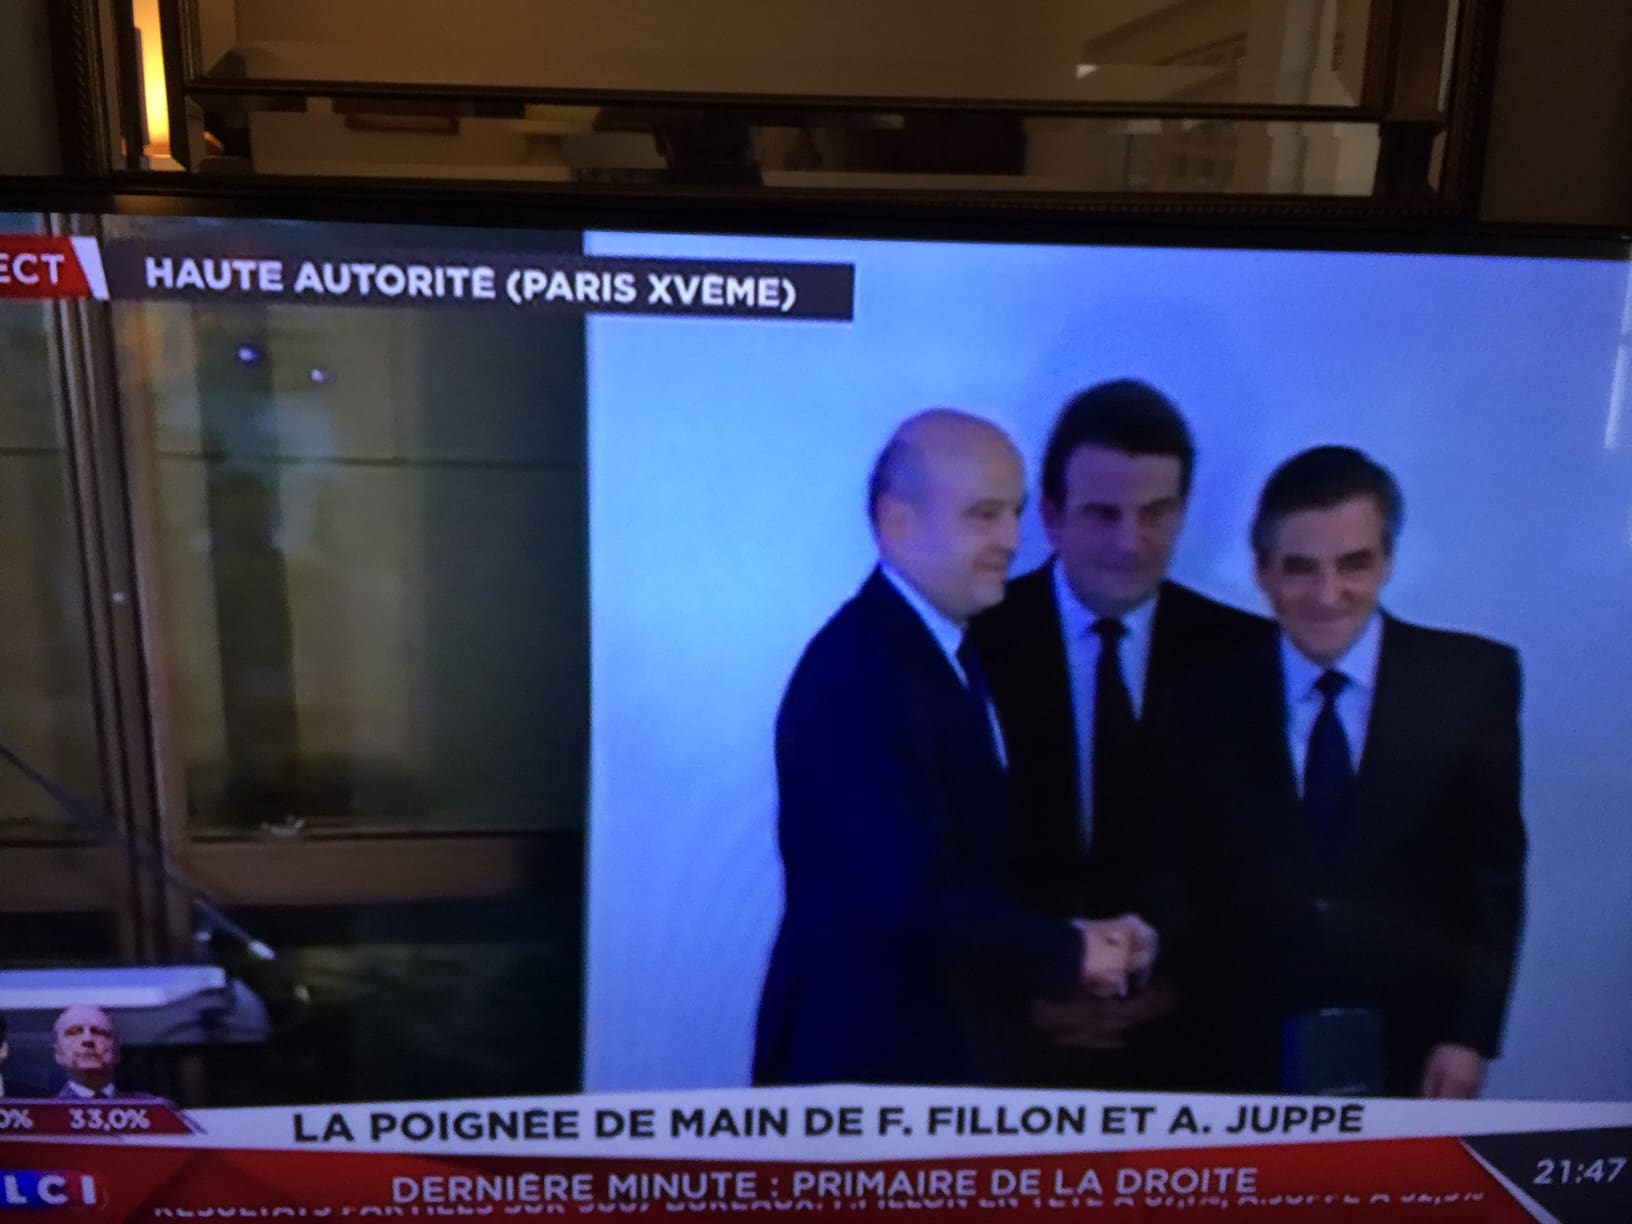 Forte image symbolique : la poignée de main entre Fillon et Juppé